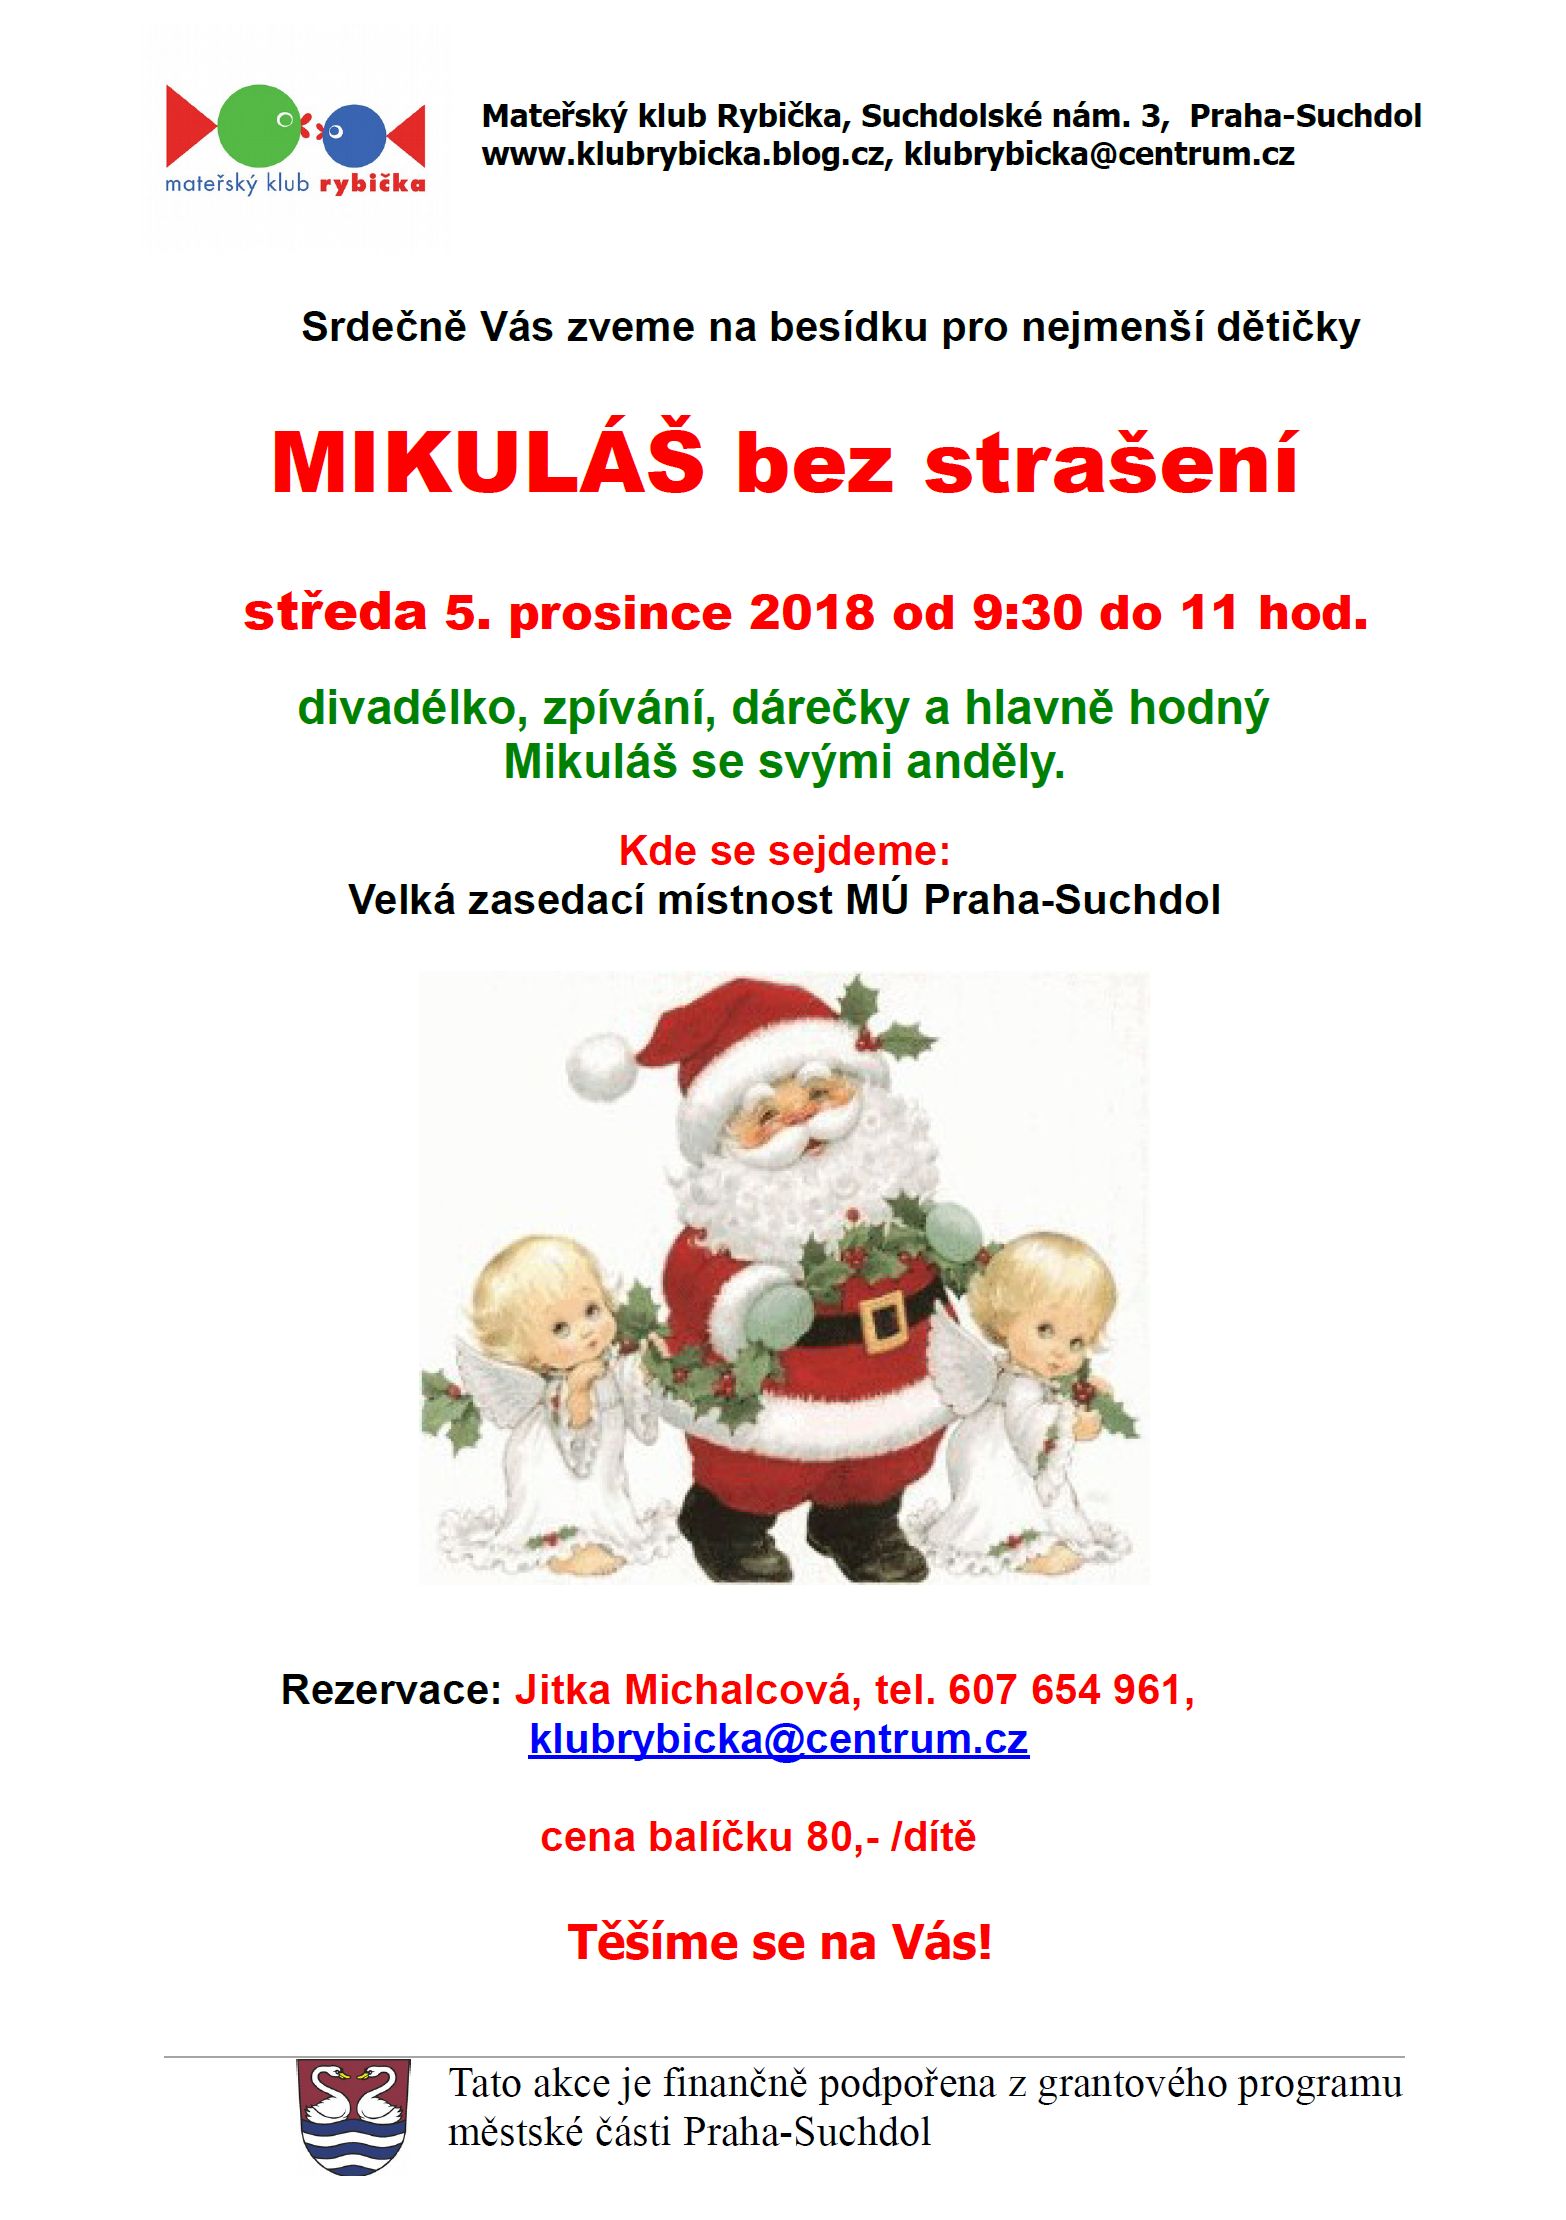 Mikuláš bez strašení MK Rybička 5.12.2018